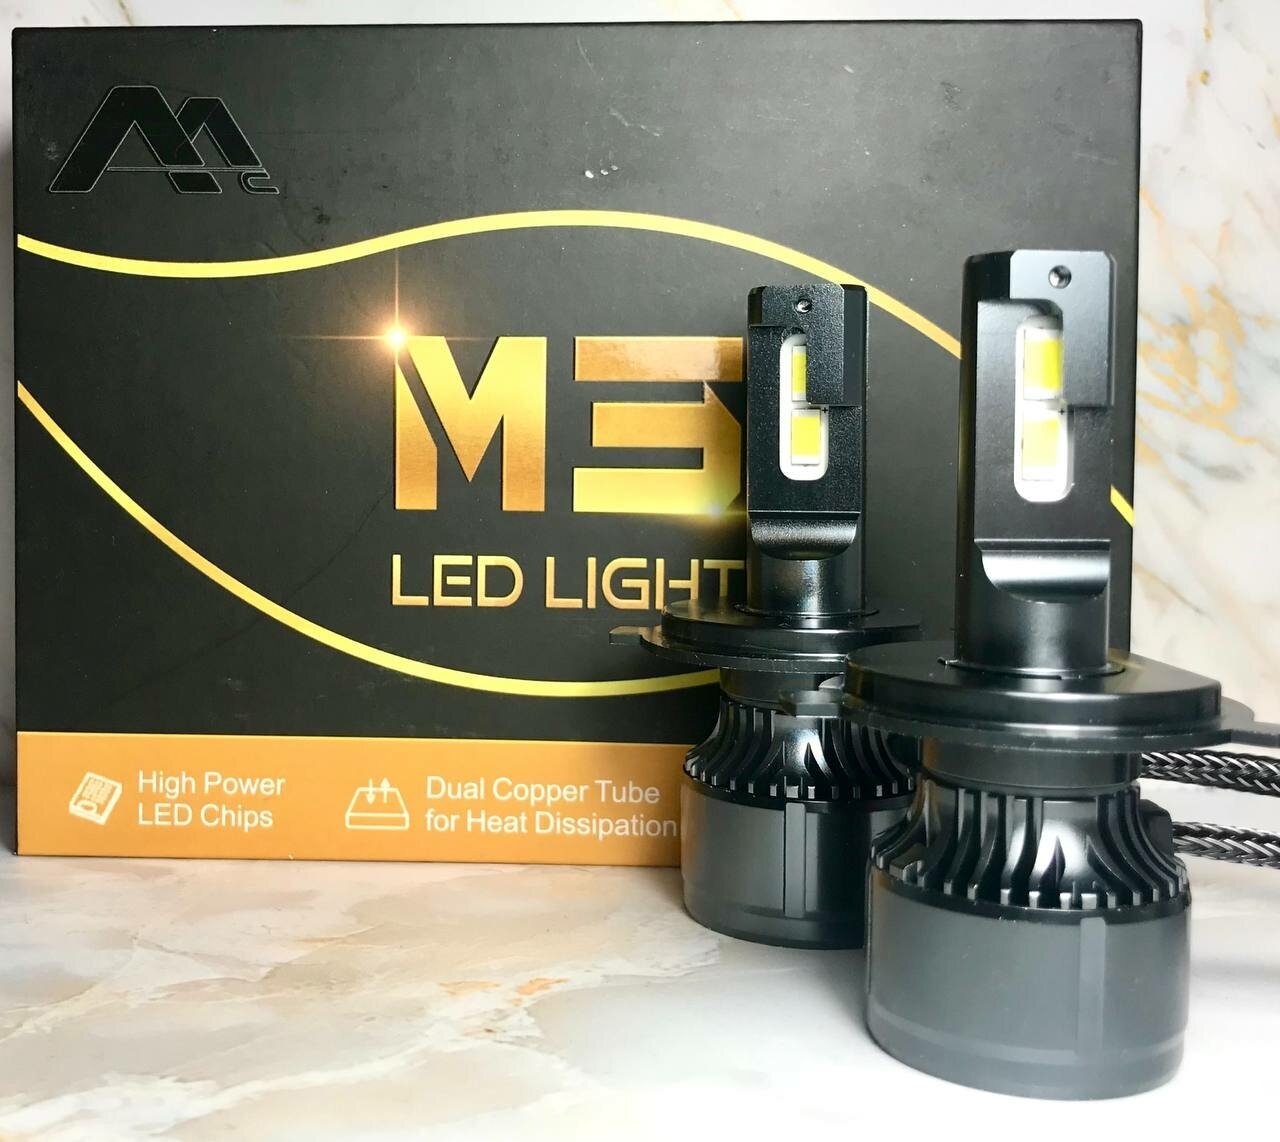 LED LIHGT М3 Лампа-H4 2шт.